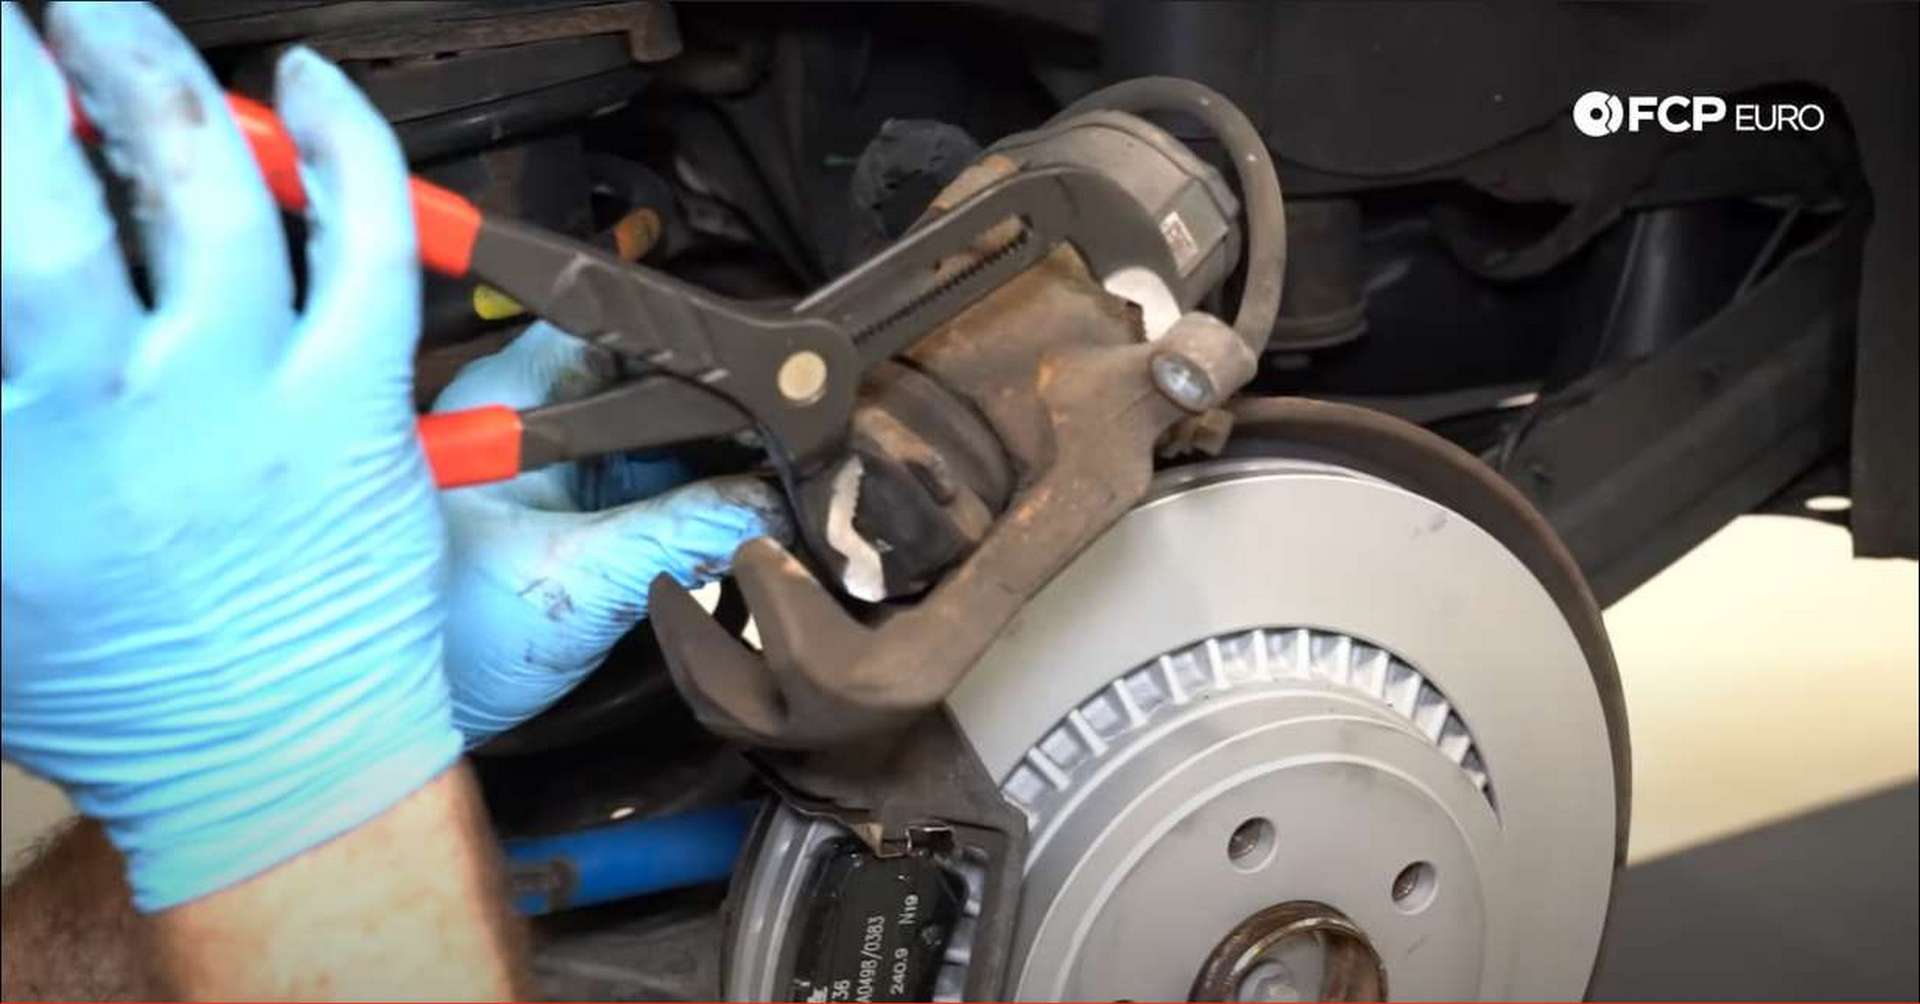 DIY P3 Volvo Rear Brakes retracting the caliper piston